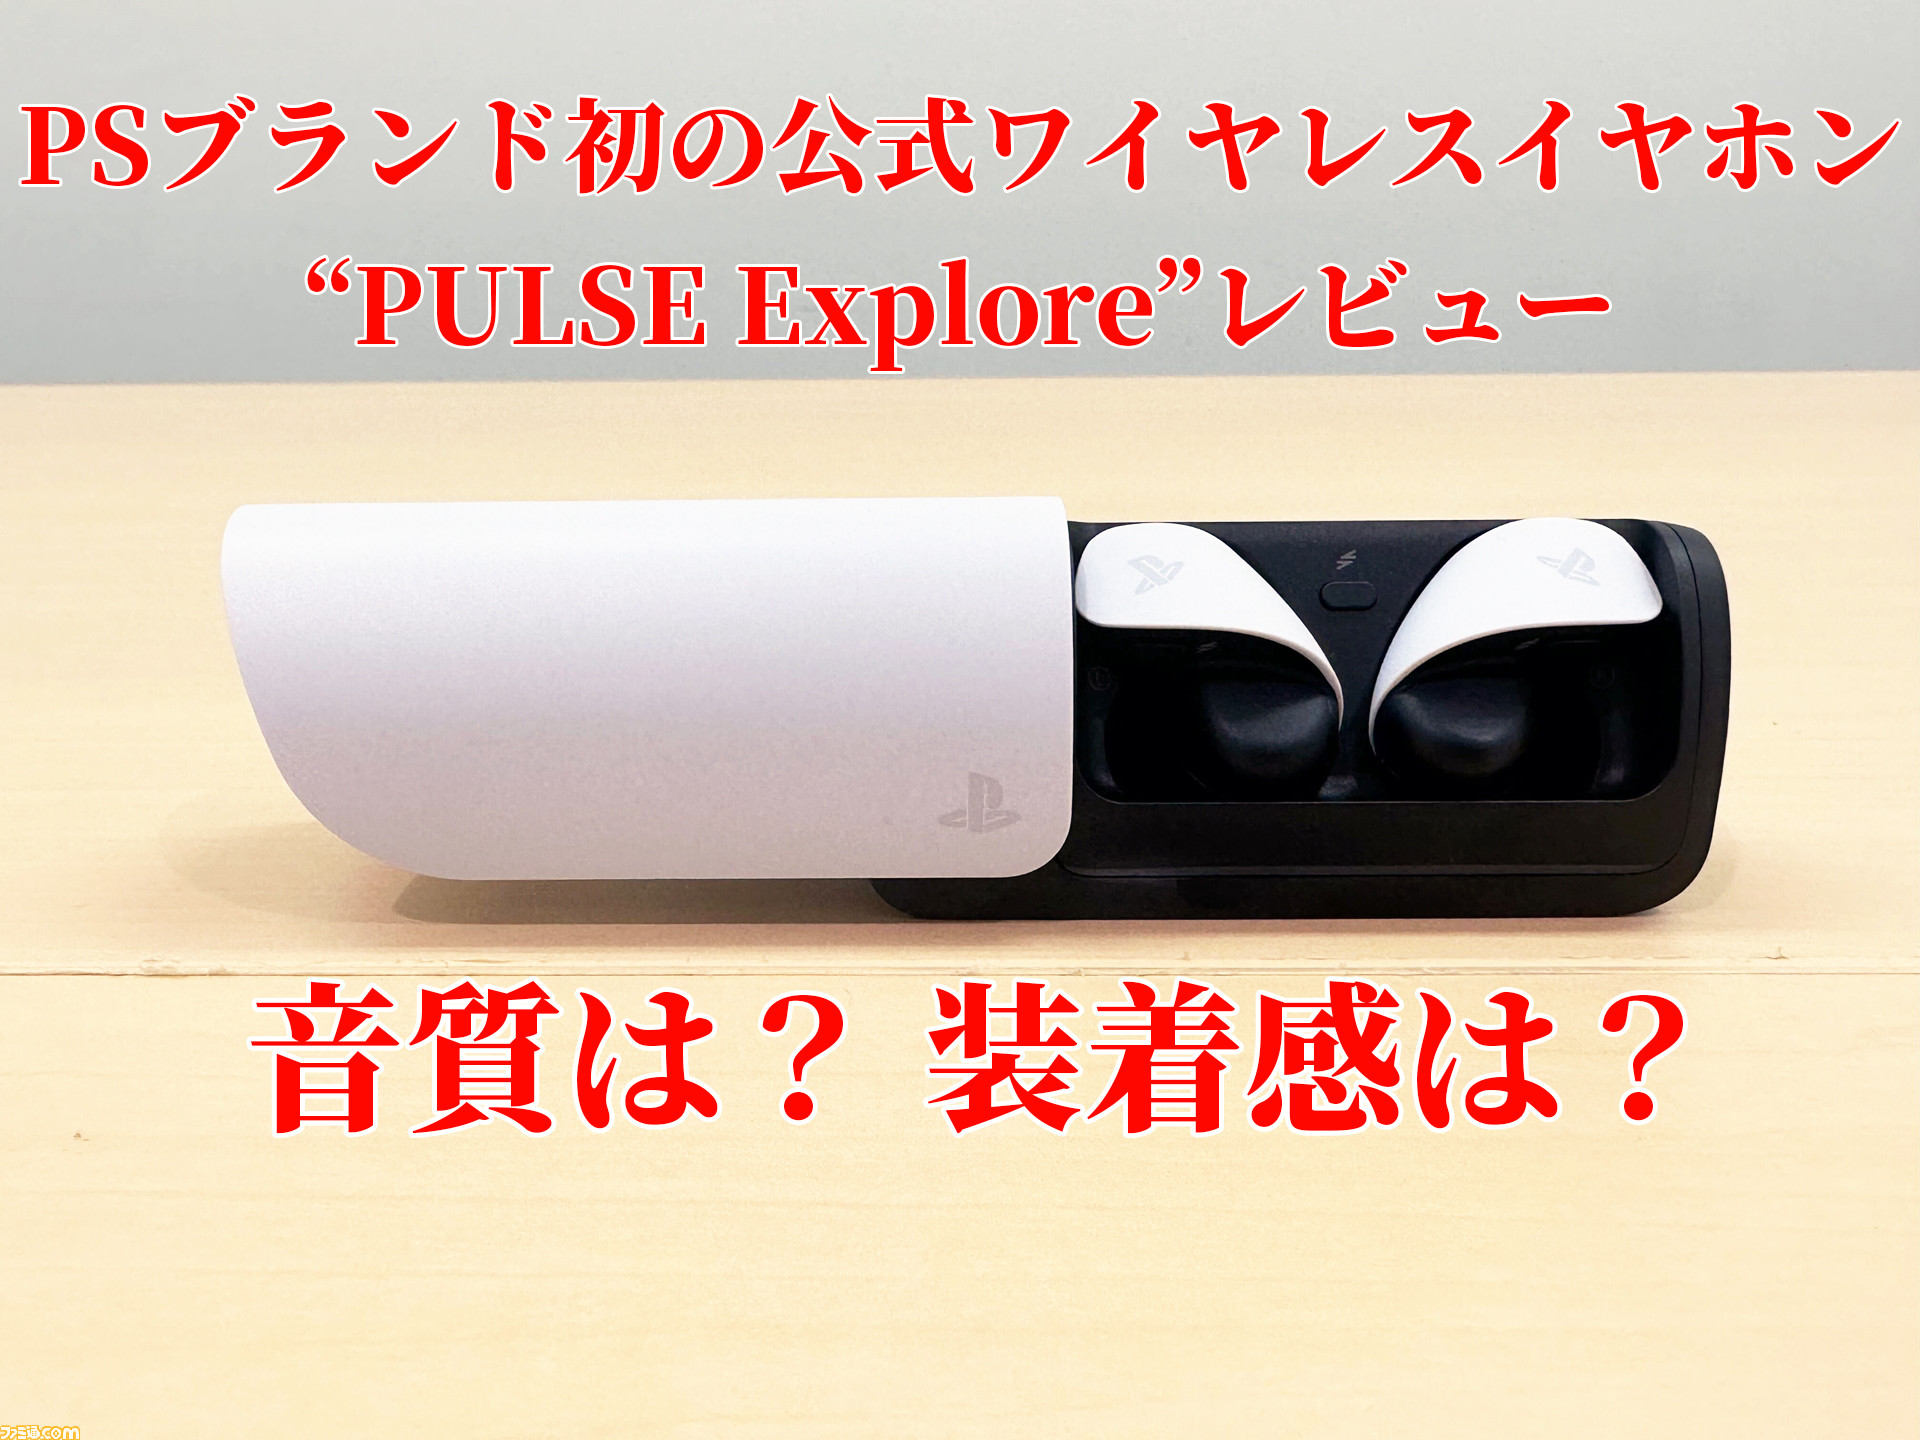 PSブランド初の公式ワイヤレスイヤホン“PULSE Explore”が本日発売